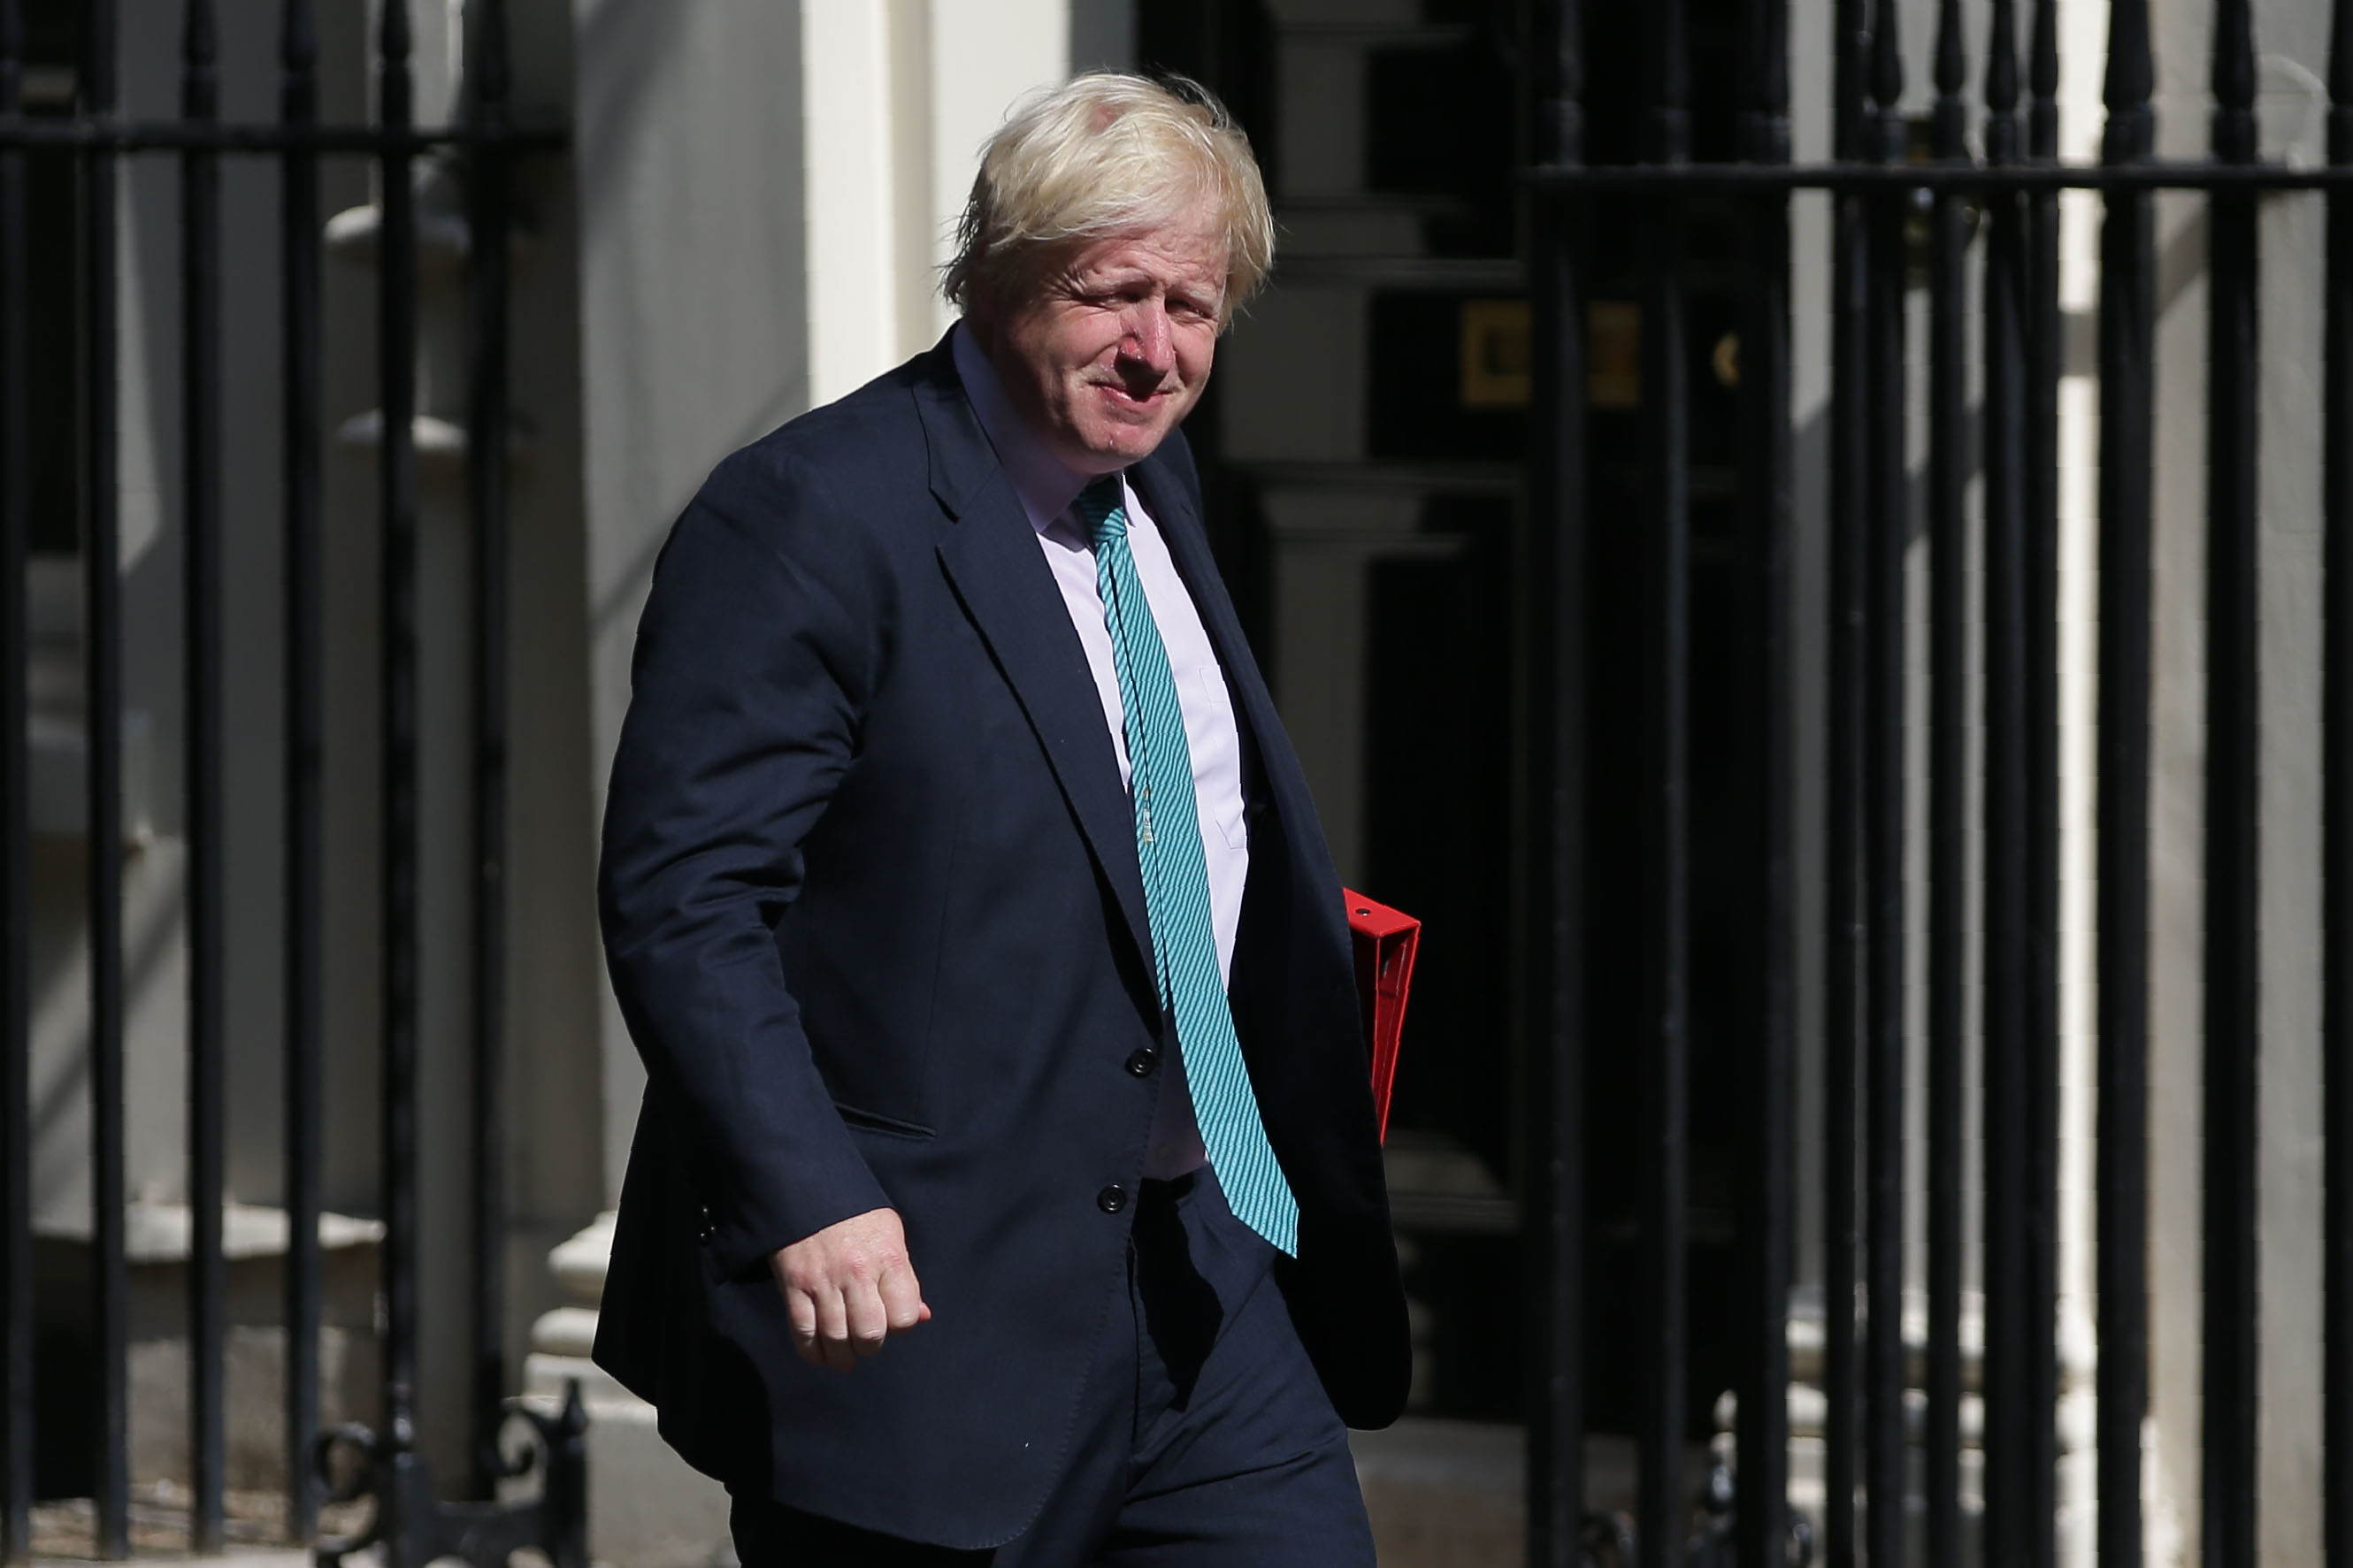 El secretario de Relaciones Exteriores de Gran Bretaña, Boris Johnson, llega a una reunión de gabinete en el 10 de Downing Street, en el centro de Londres, el 4 de julio de 2017. Crédito: DANIEL LEAL-OLIVAS / AFP / Getty Images